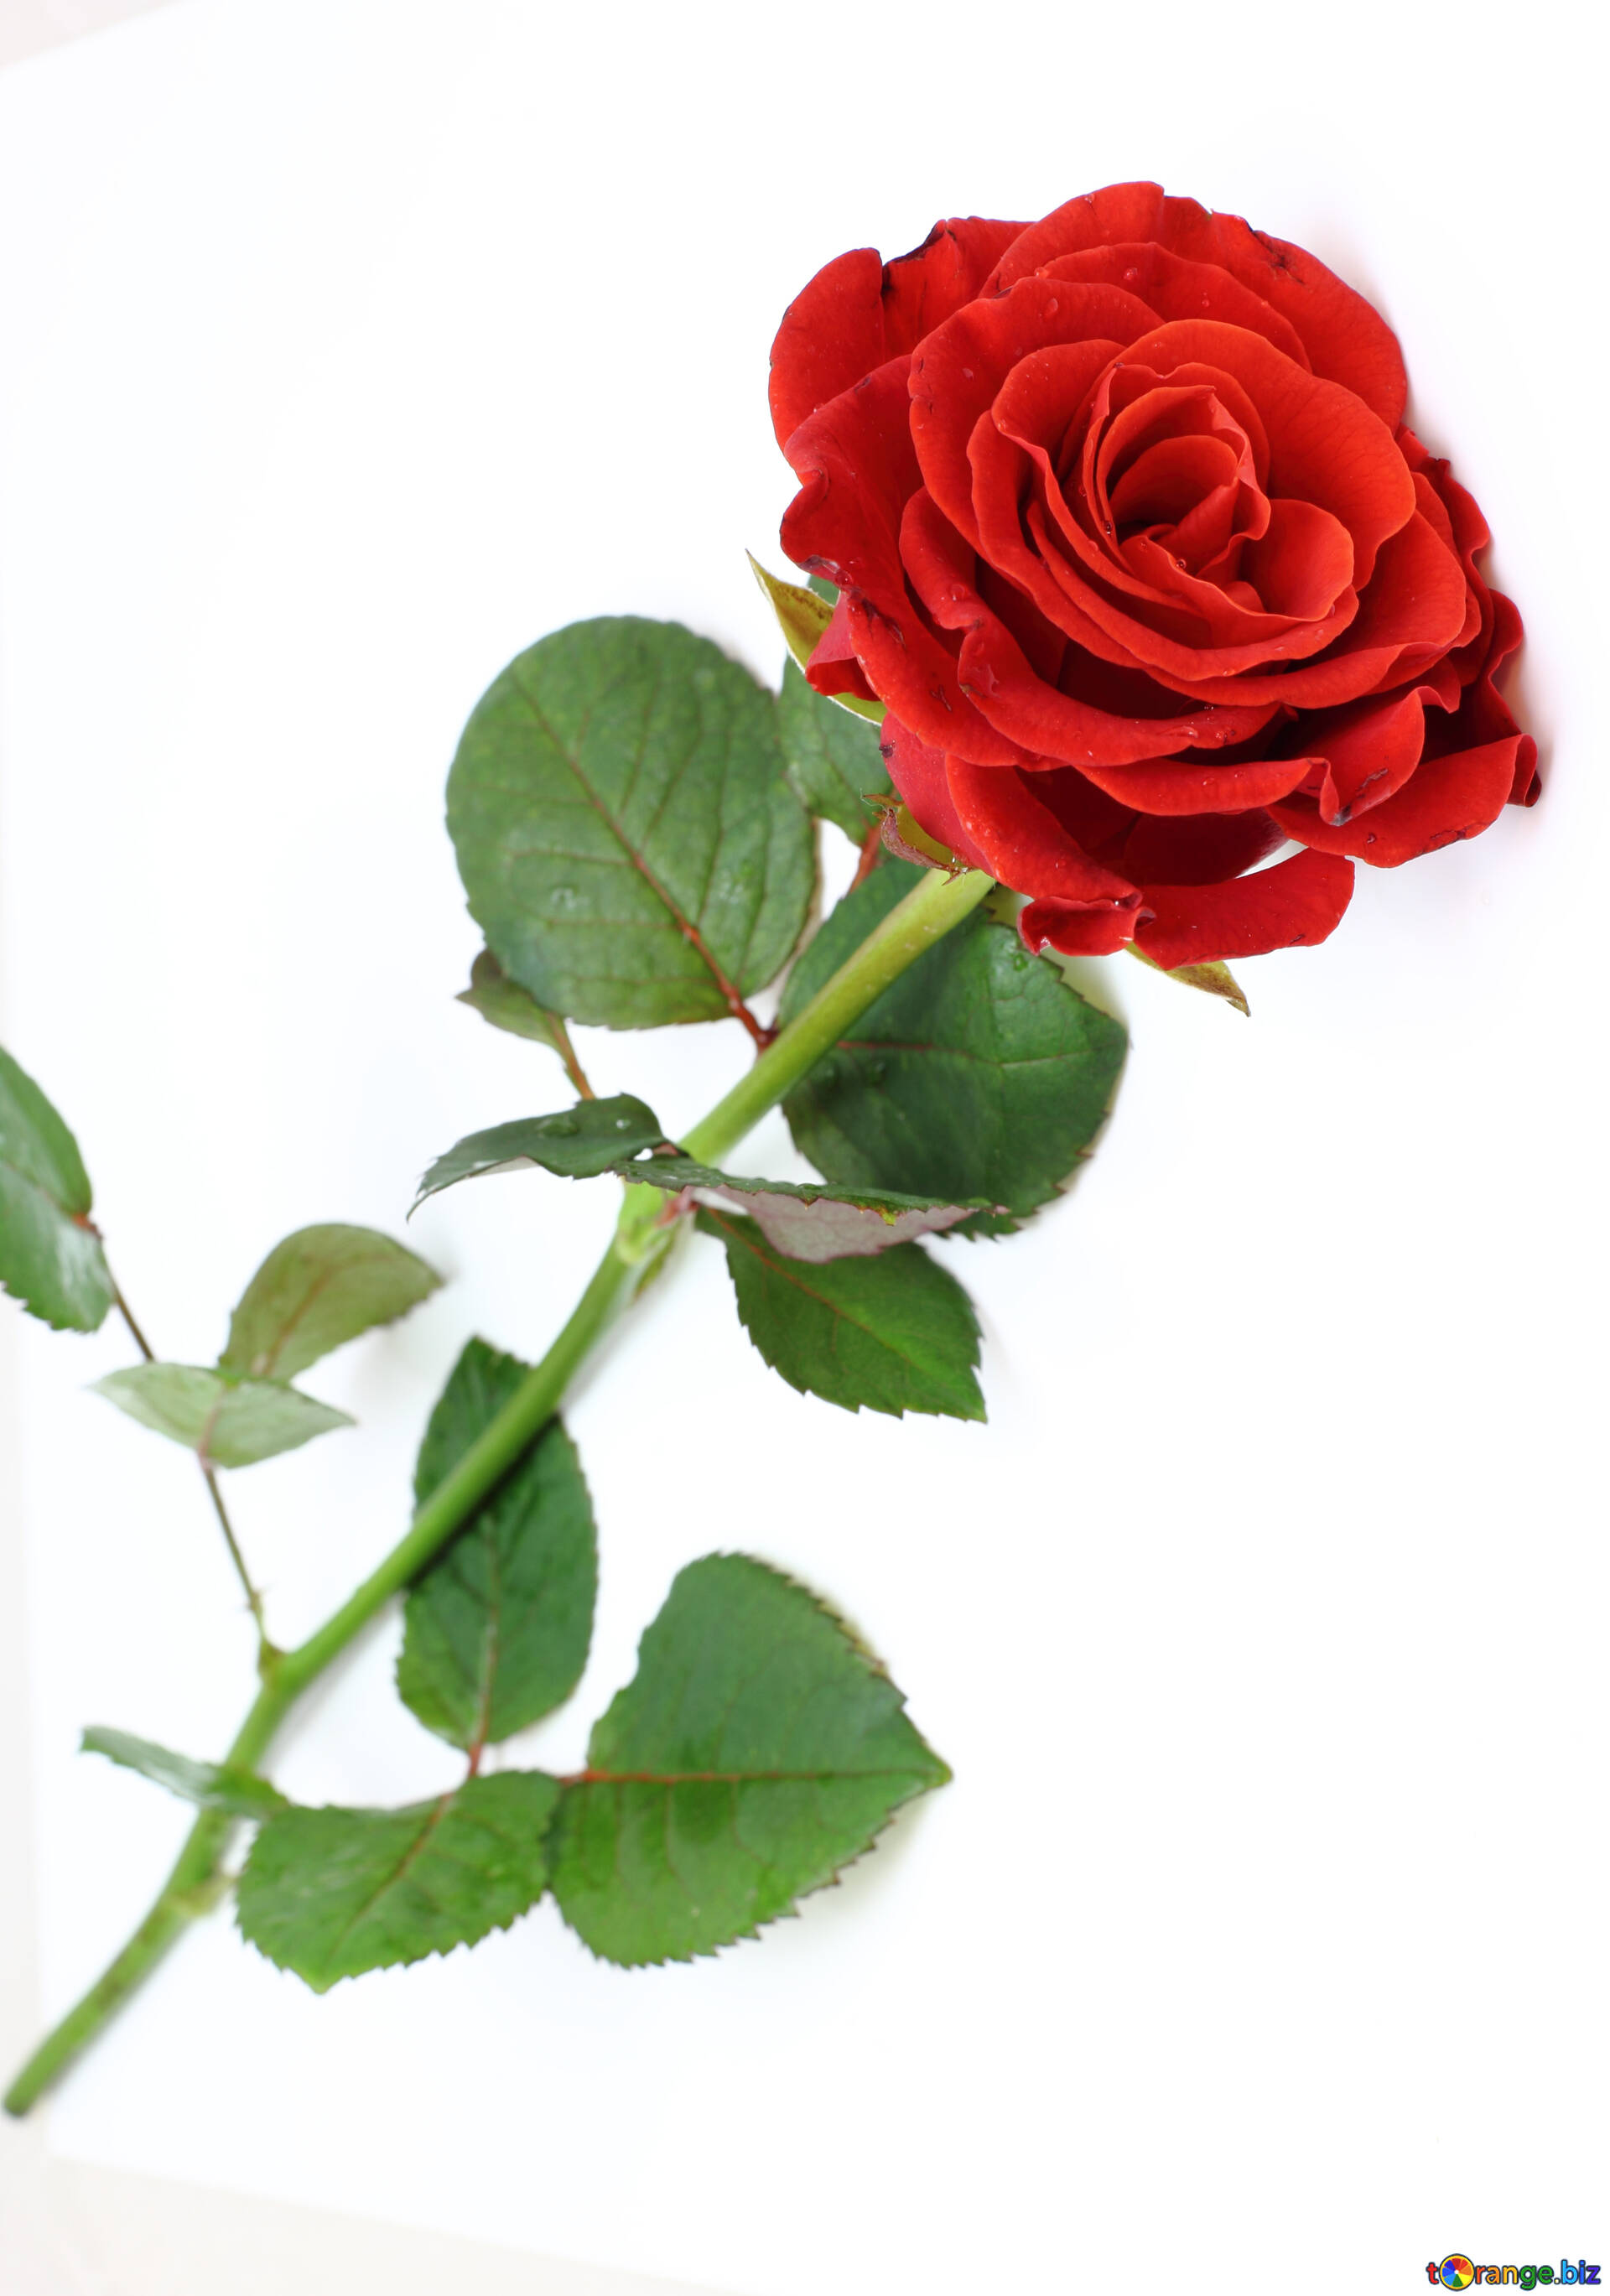 Red beautiful rose free image - № 16891